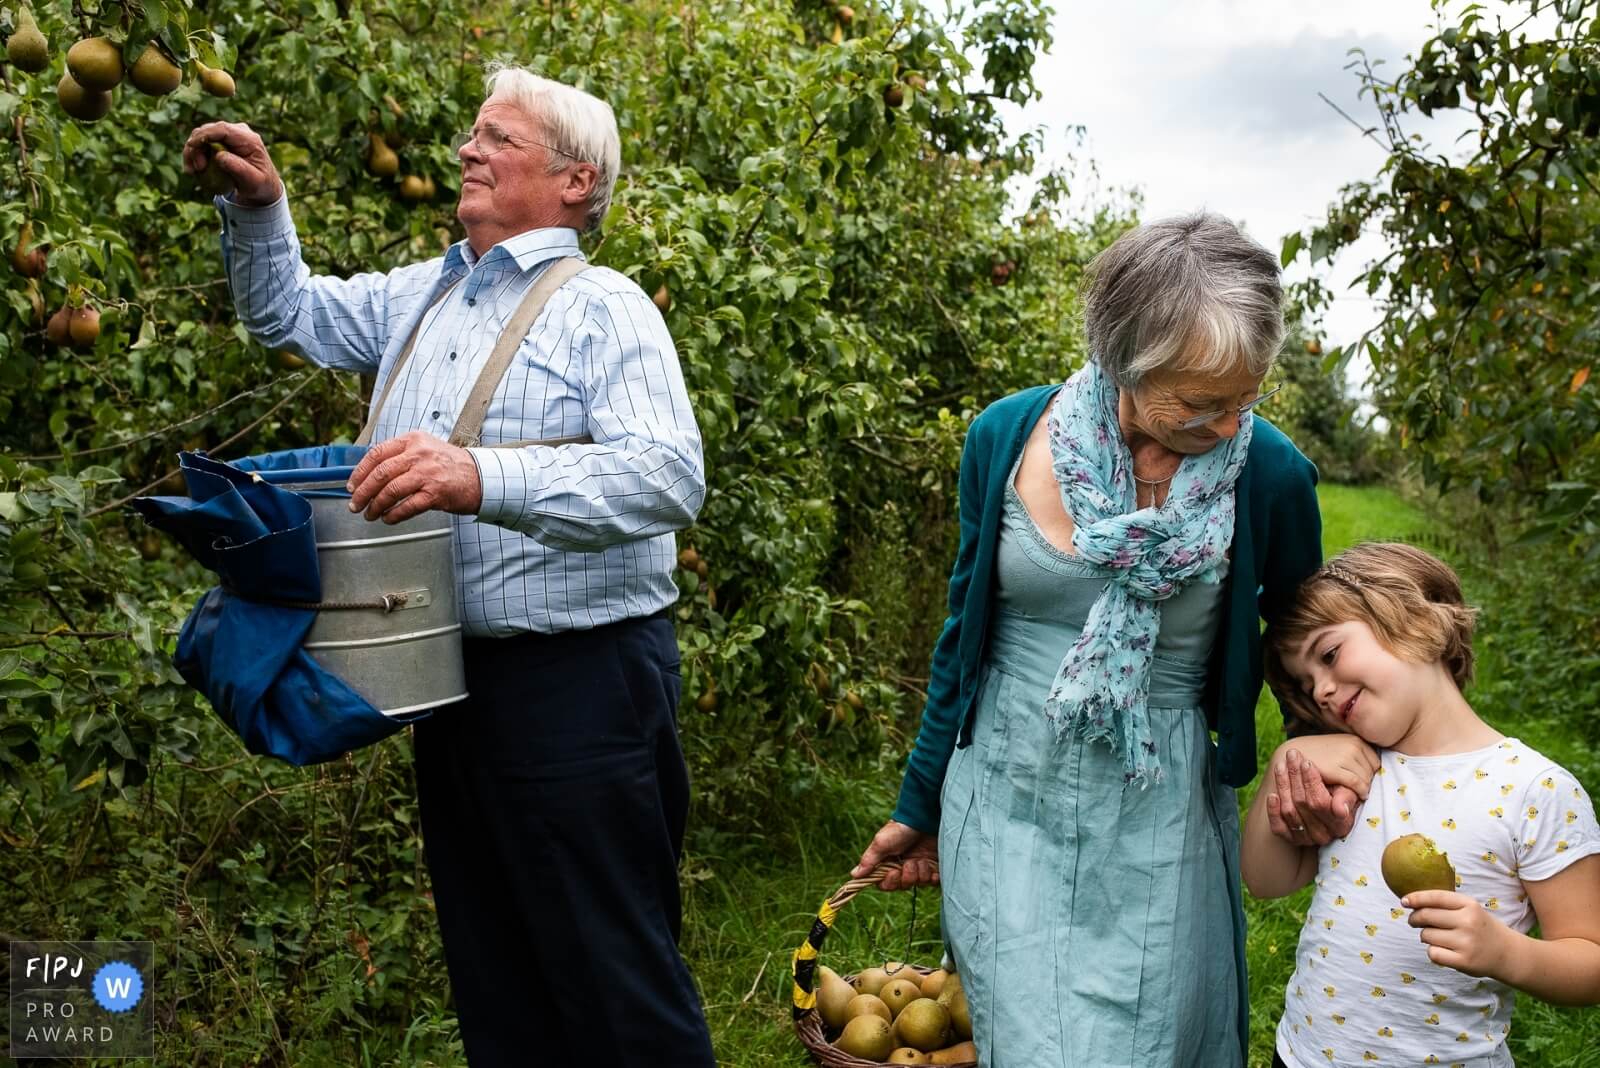 grotouders en kleinkind plukken samen peren tijdens familiereportage die ze cadeau kregen